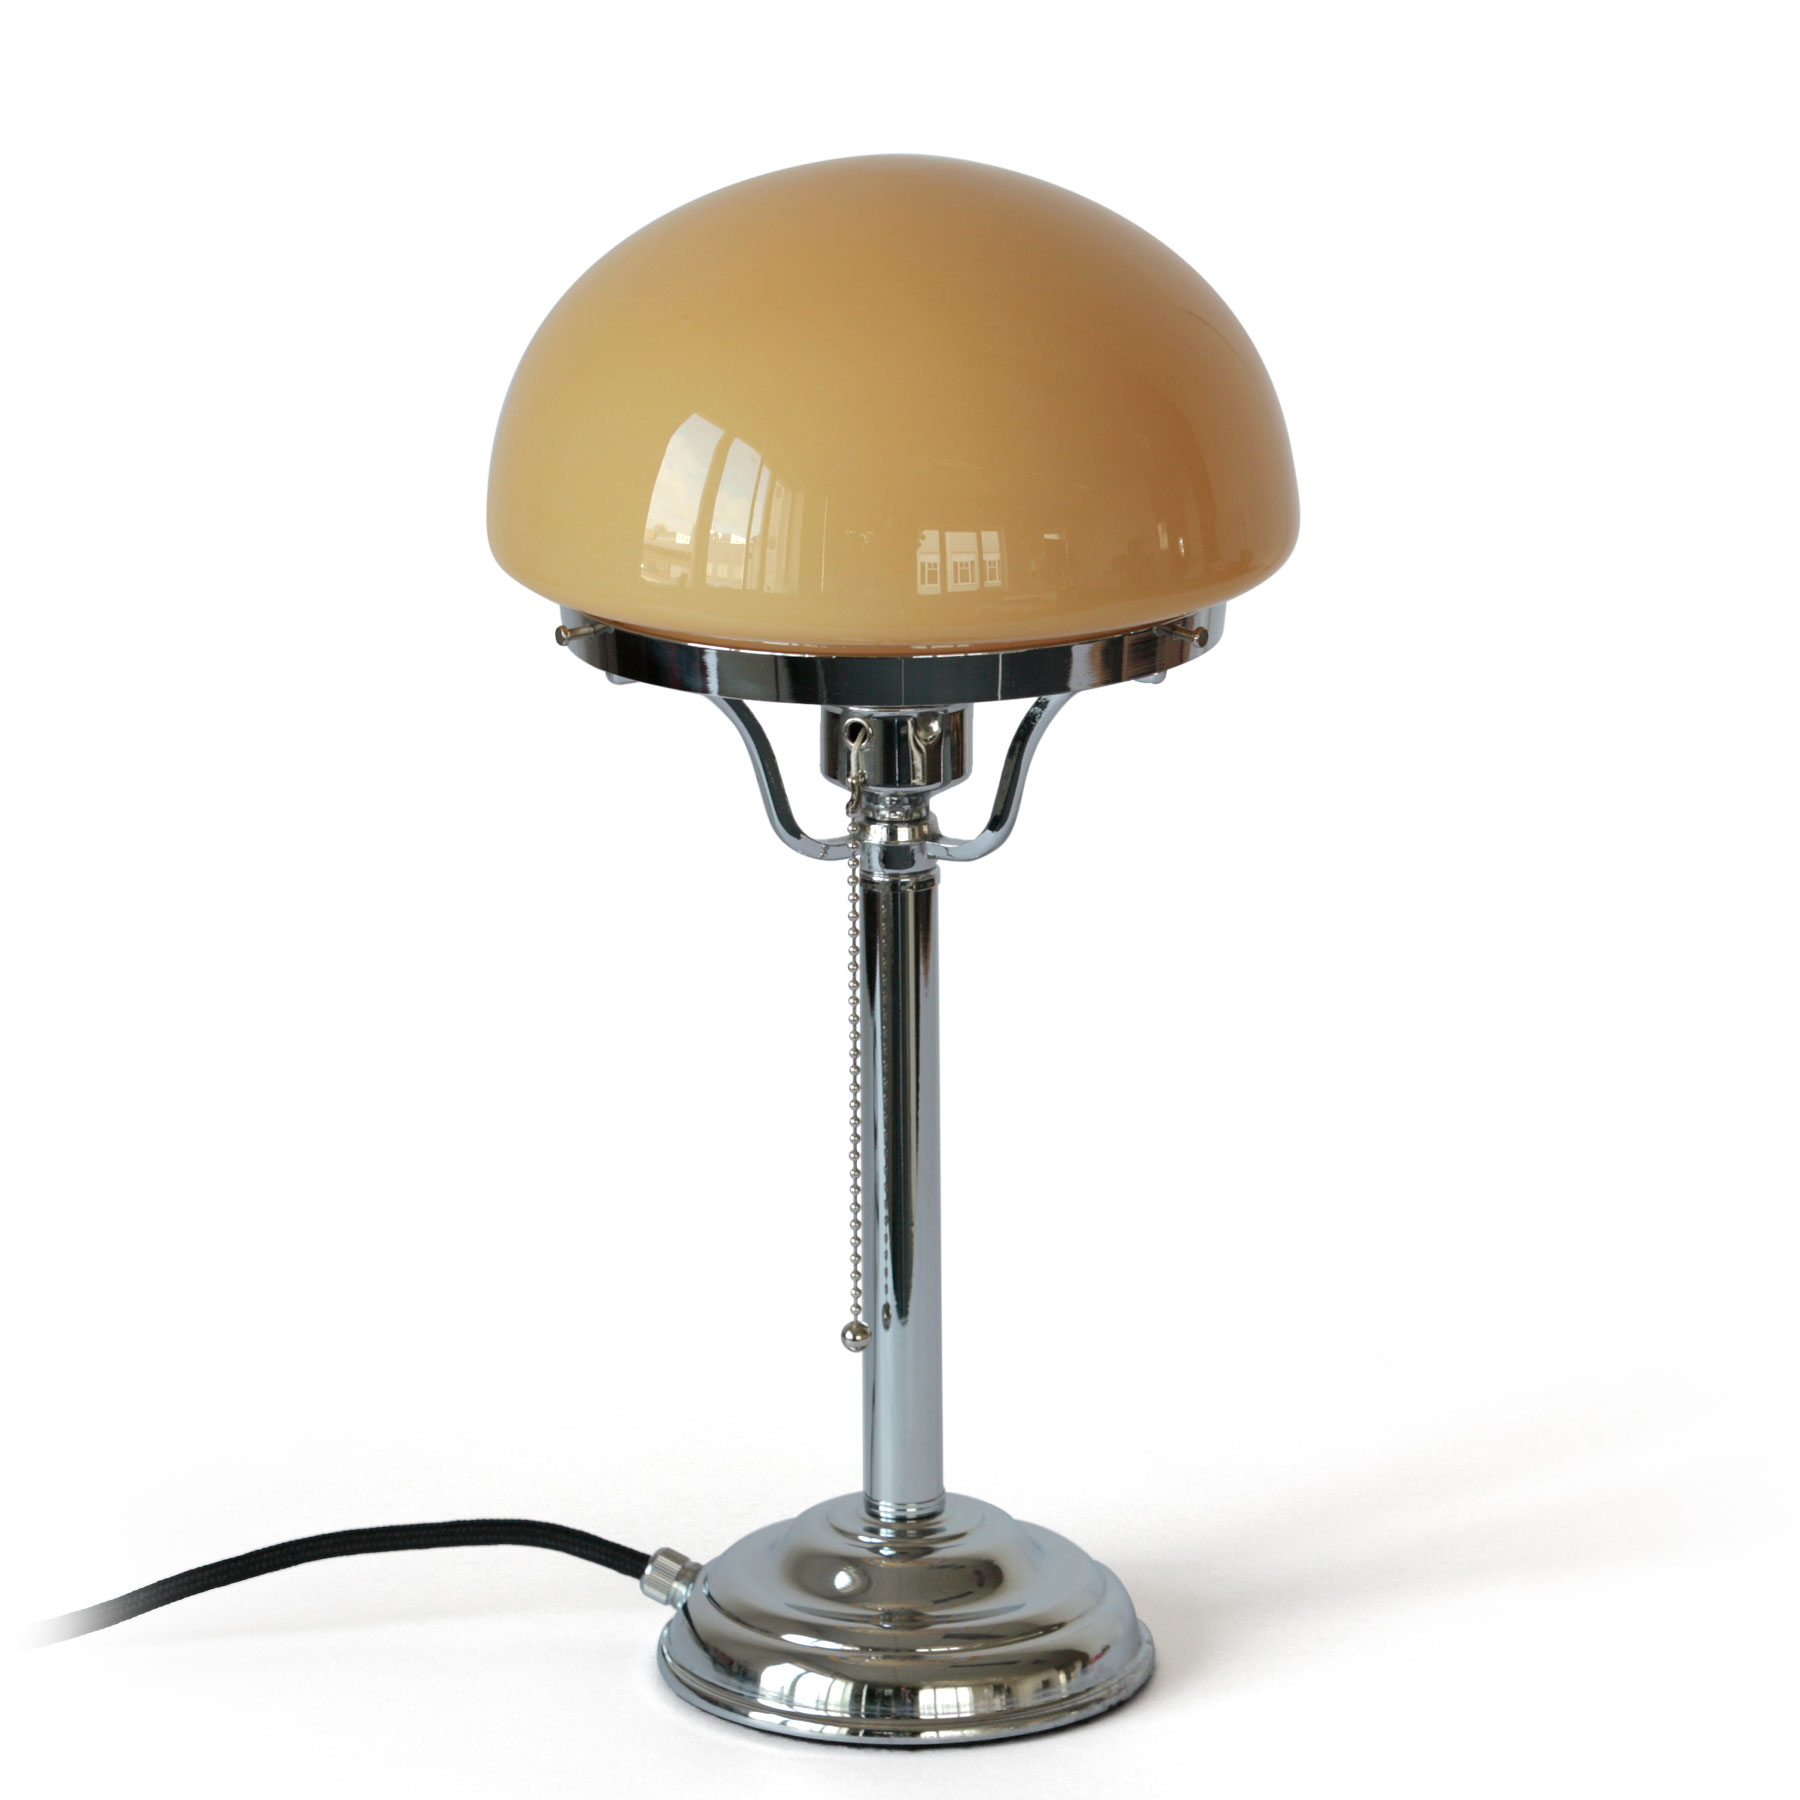 Kleine „Pilz“-Tischleuchte mit Opalglas-Haube (Ø 20 cm): Kleine Pilz-Tischleuchte, hier in Messing glänzend vernickelt, mit cognacfarbenem Opalglas-Schirm